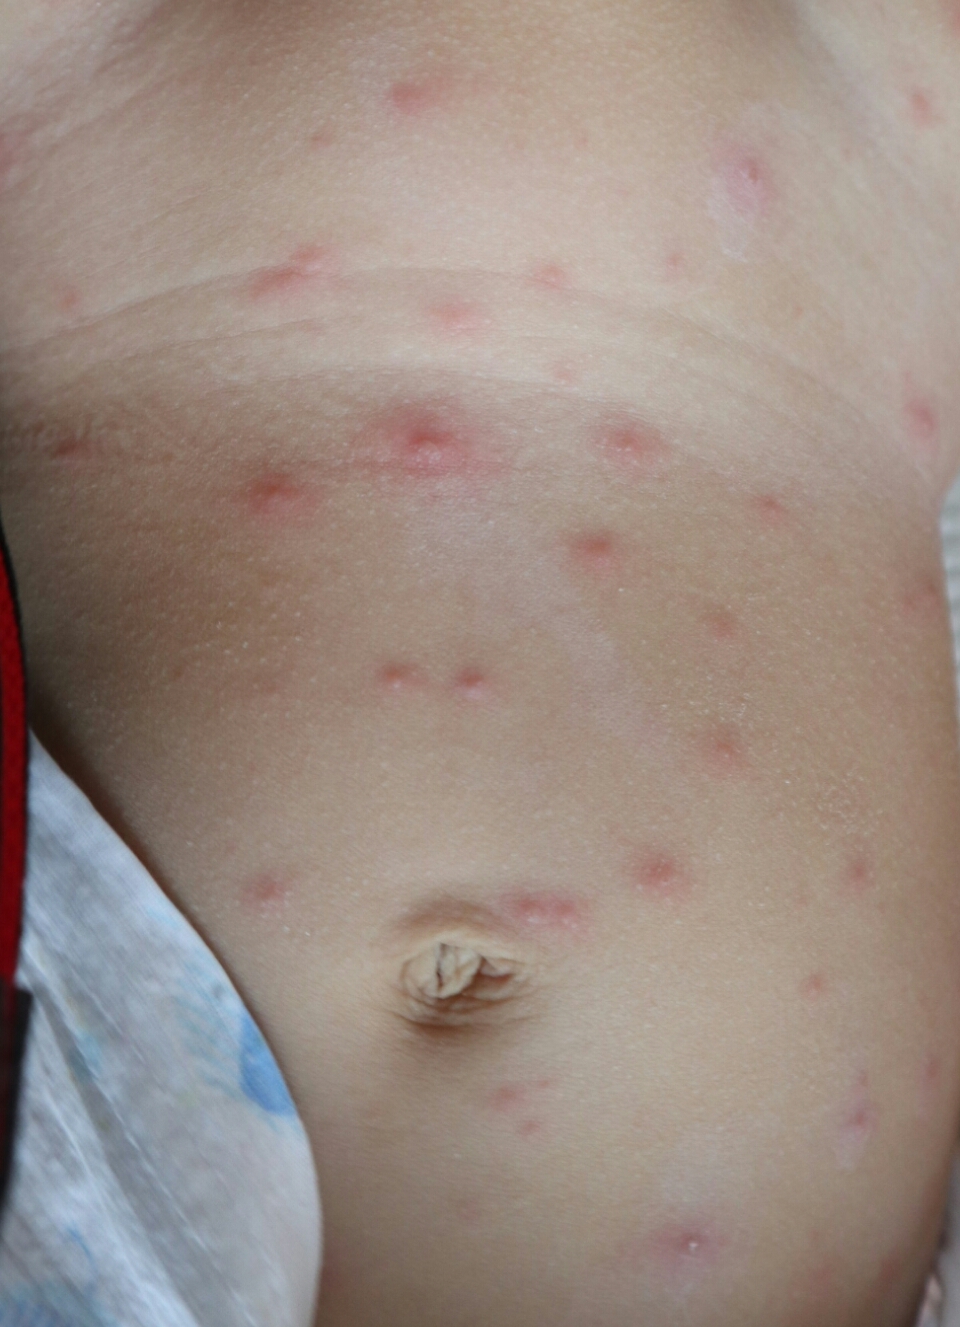 大于12岁以上的人群及孕妇,免疫功能不全的患者,患有水痘建议抗病毒